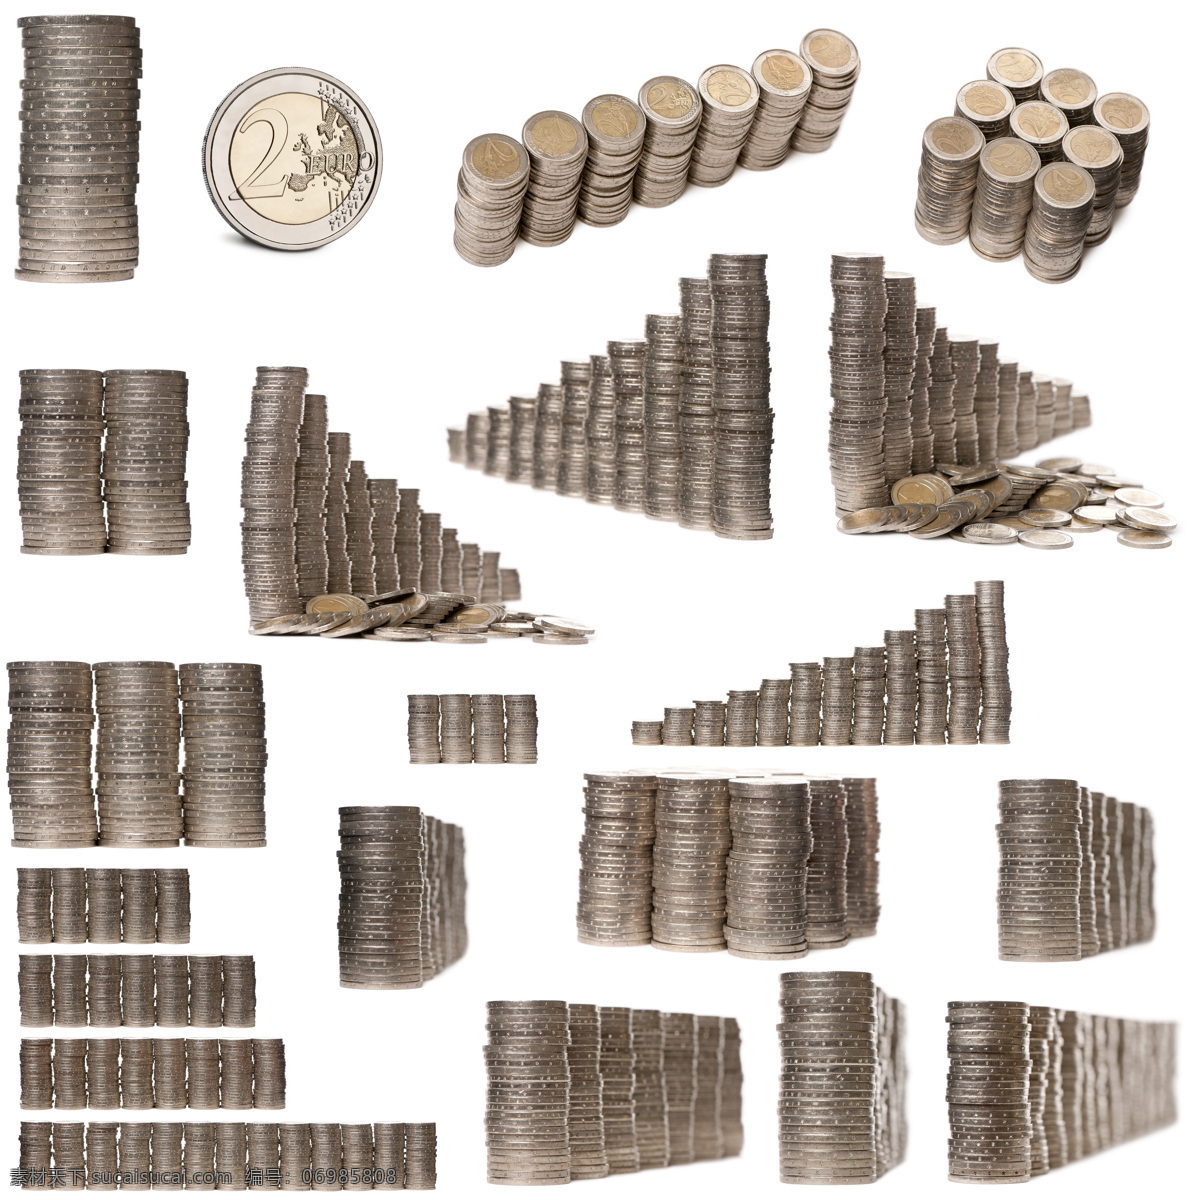 欧元 硬币 金融货币 钱 金钱 重叠 财富 特写 摄影图 高清图片 商务金融